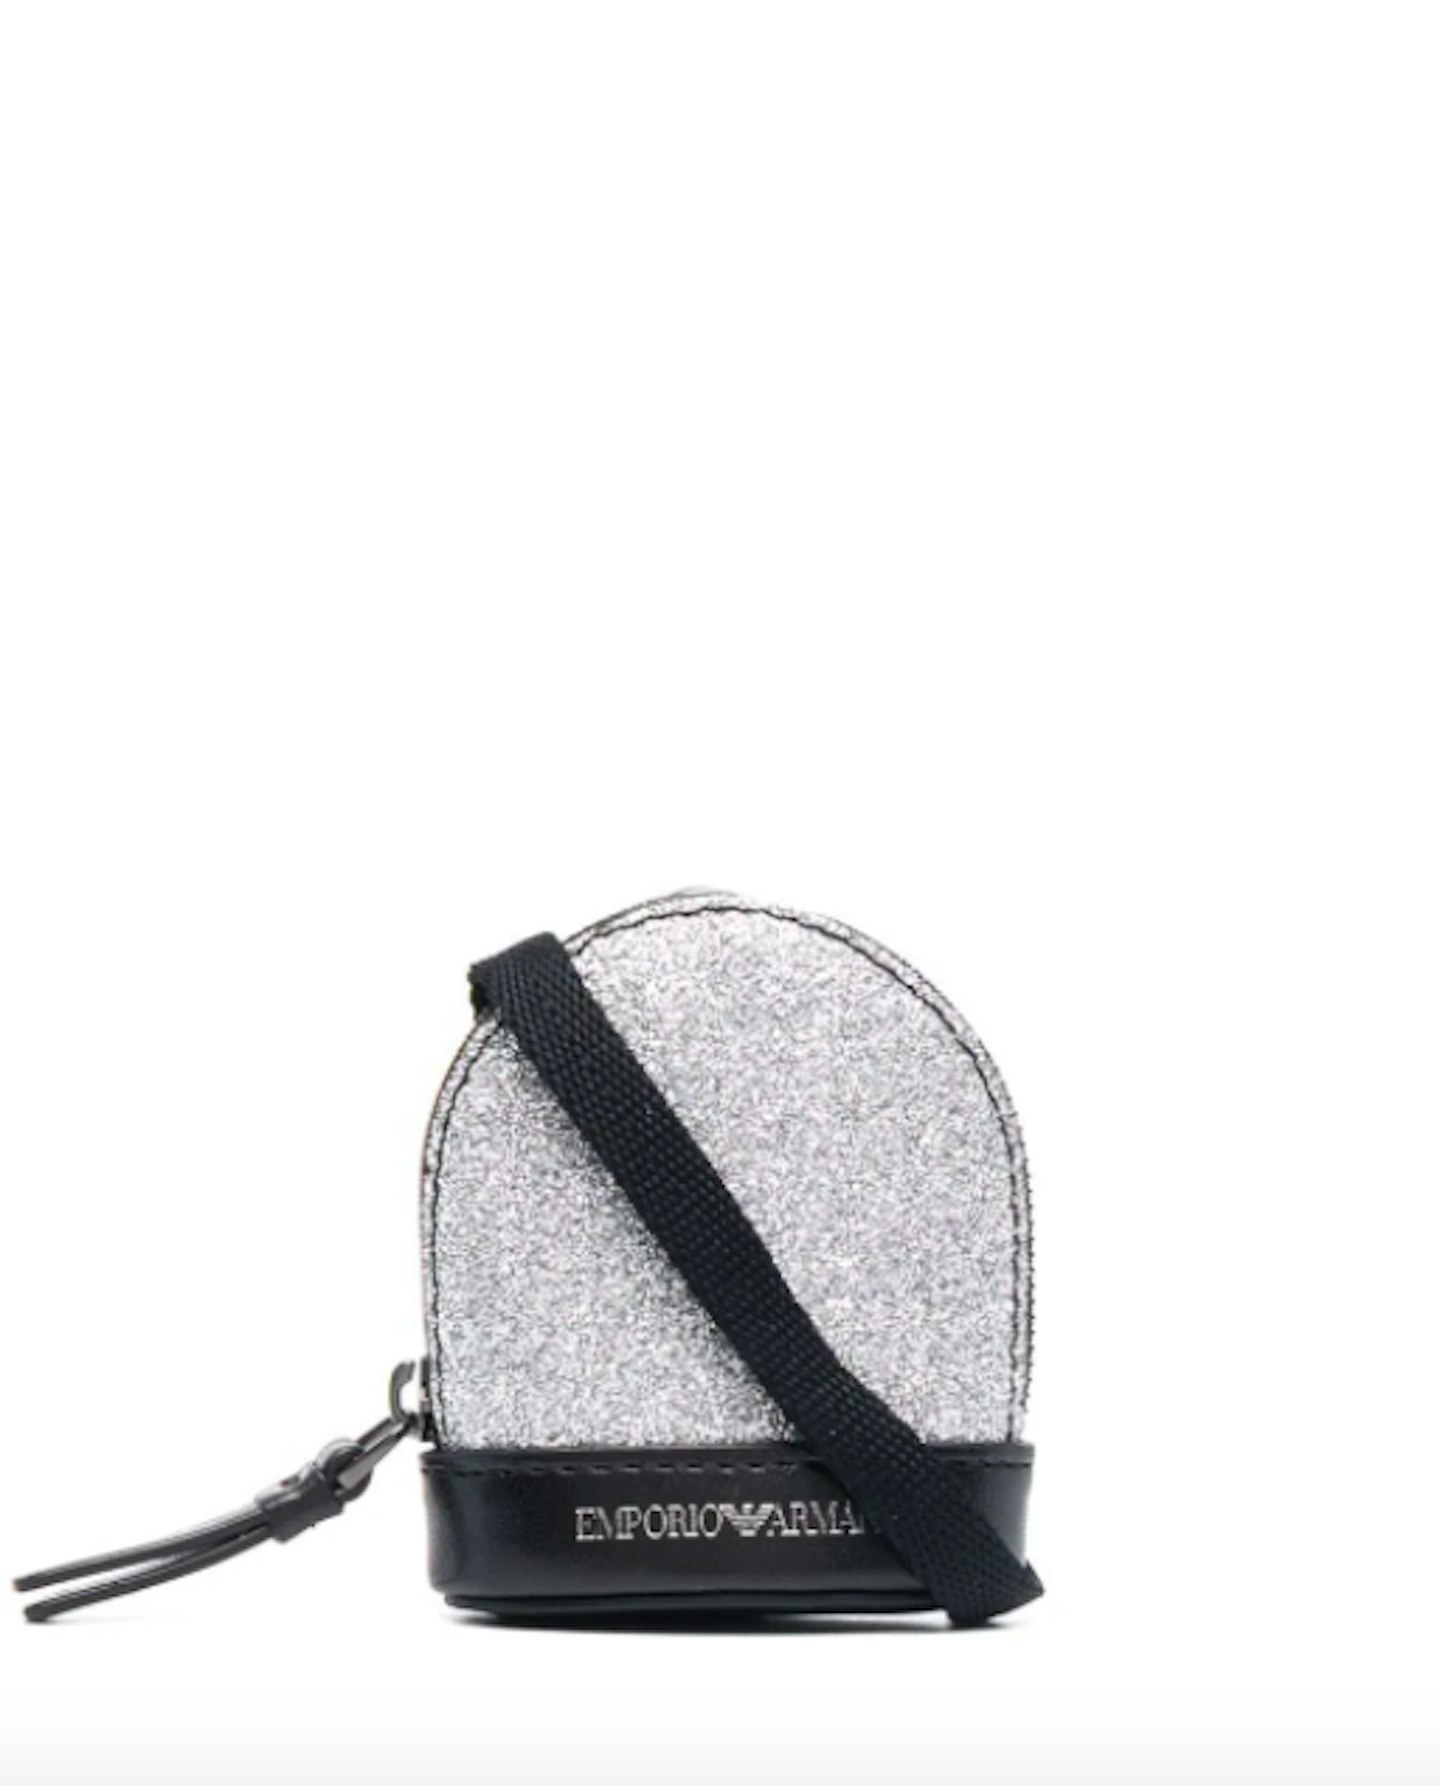 Emporio Armani, Mini Glitter Bag, £129 at Farfetch